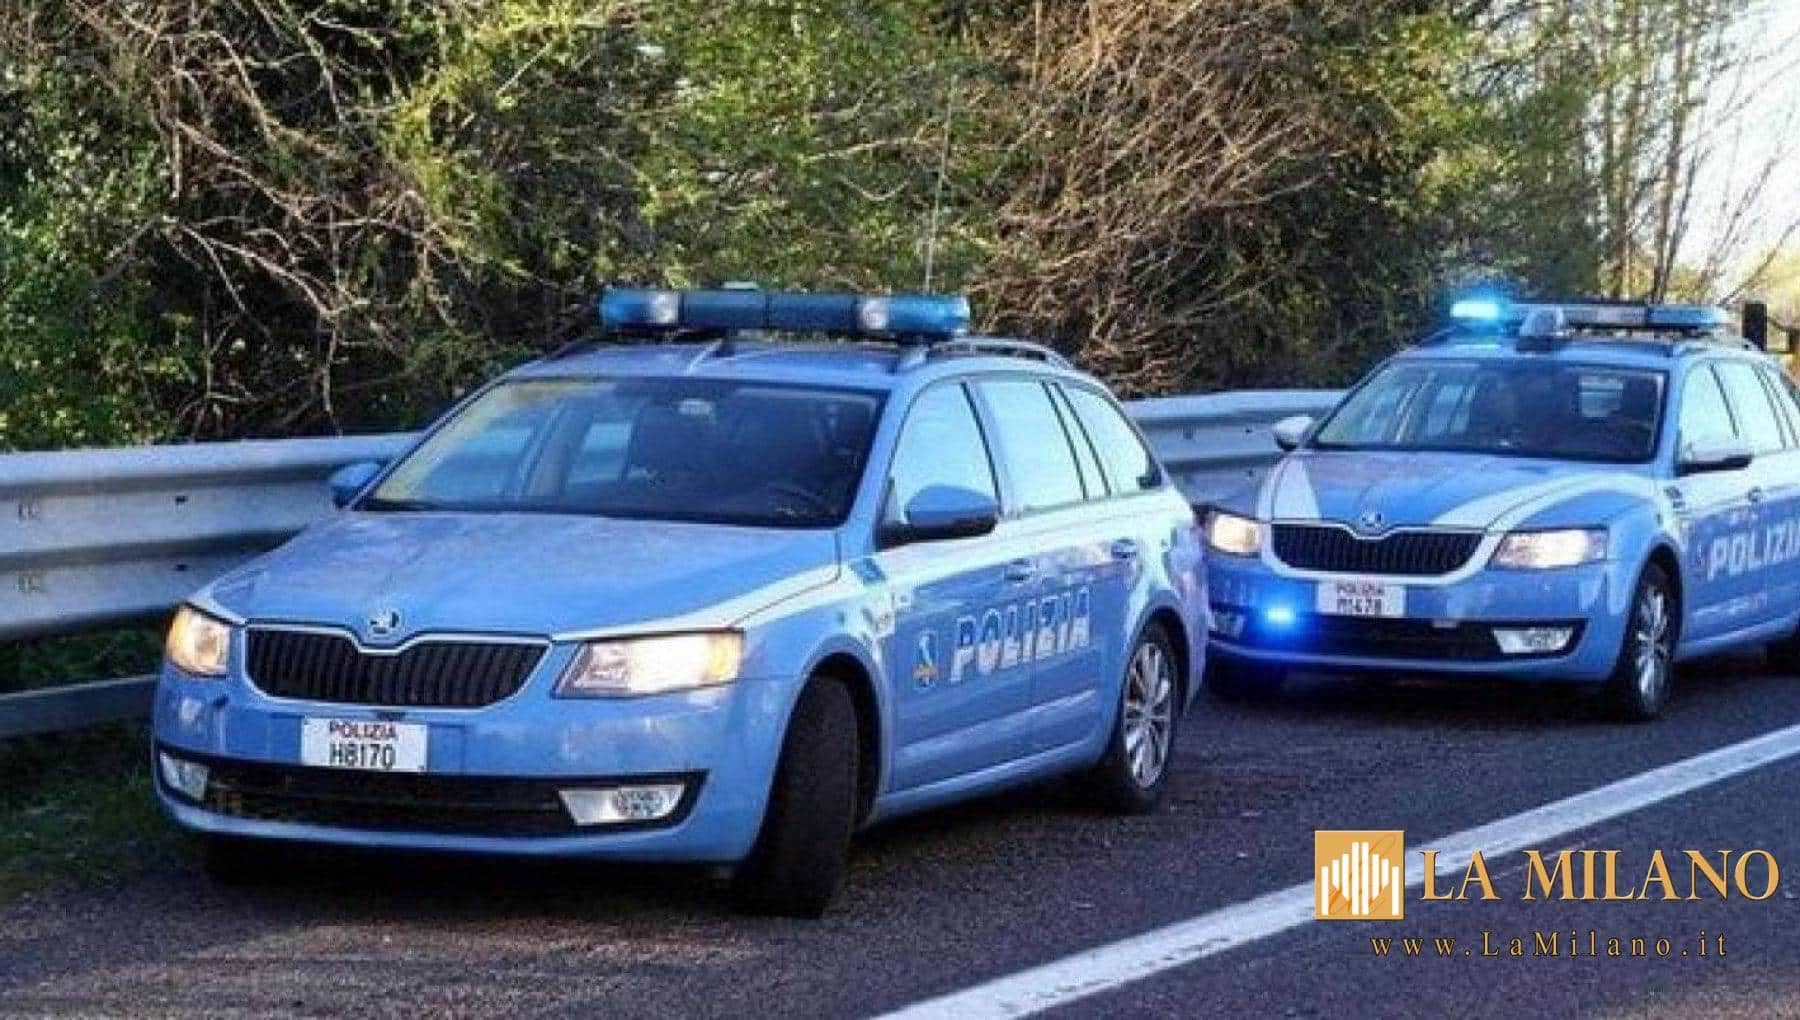 Sicurezza a Frosinone: Controlli alto impatto della Questura per la Prevenzione e il Contrasto alla Criminalità. Identificati oltre 200 soggetti e controllati 80 veicoli.